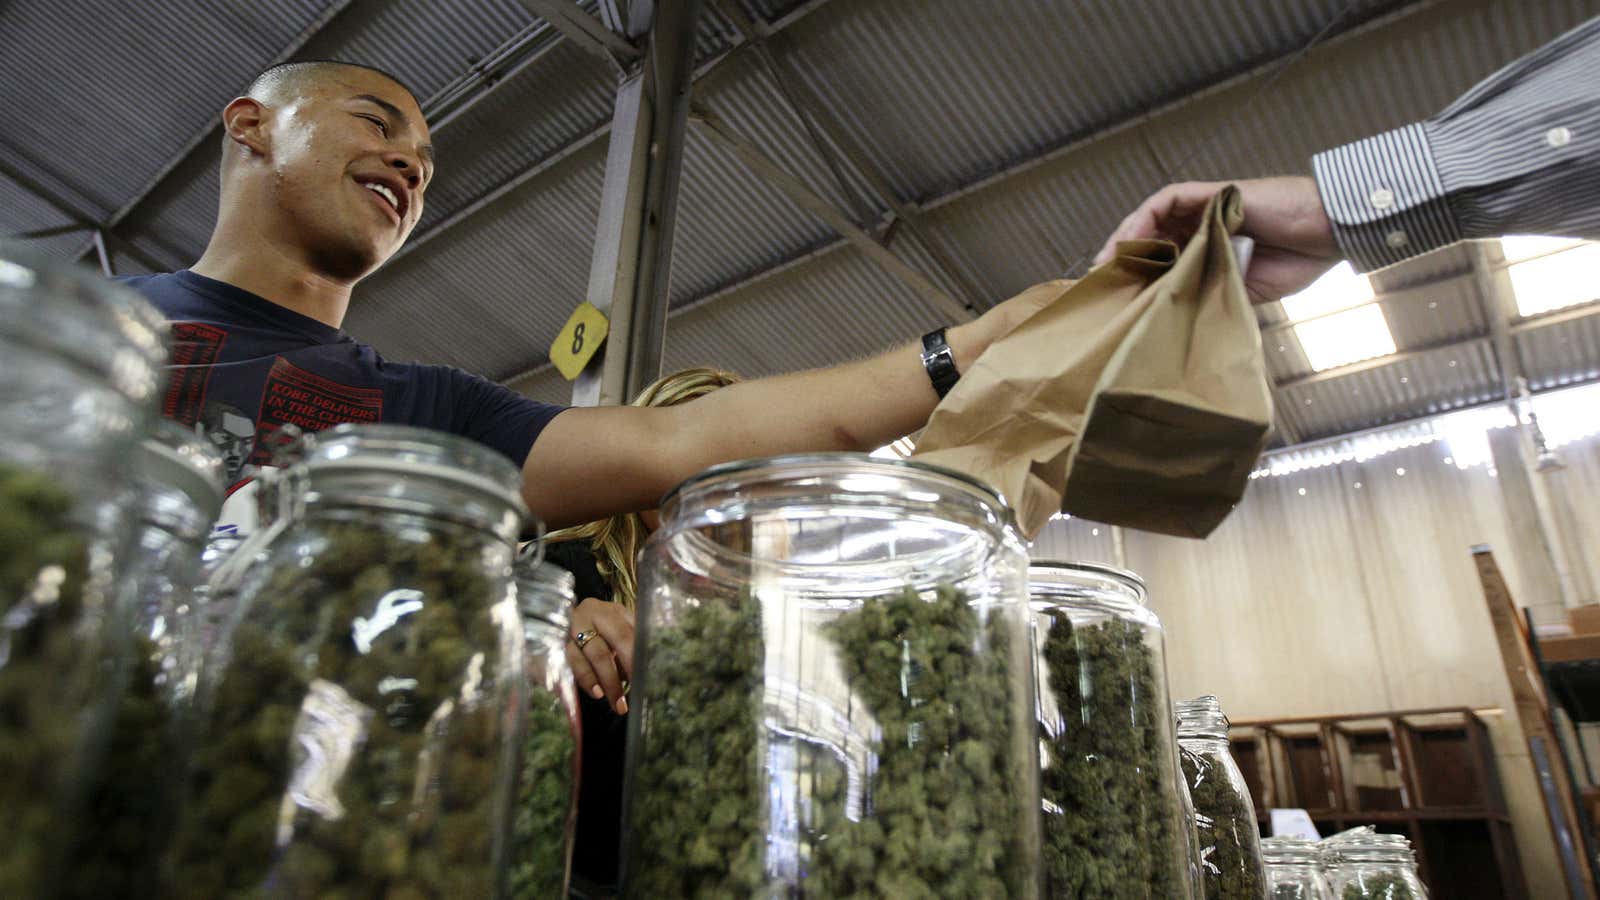 A medical marijuana farmers market in California.